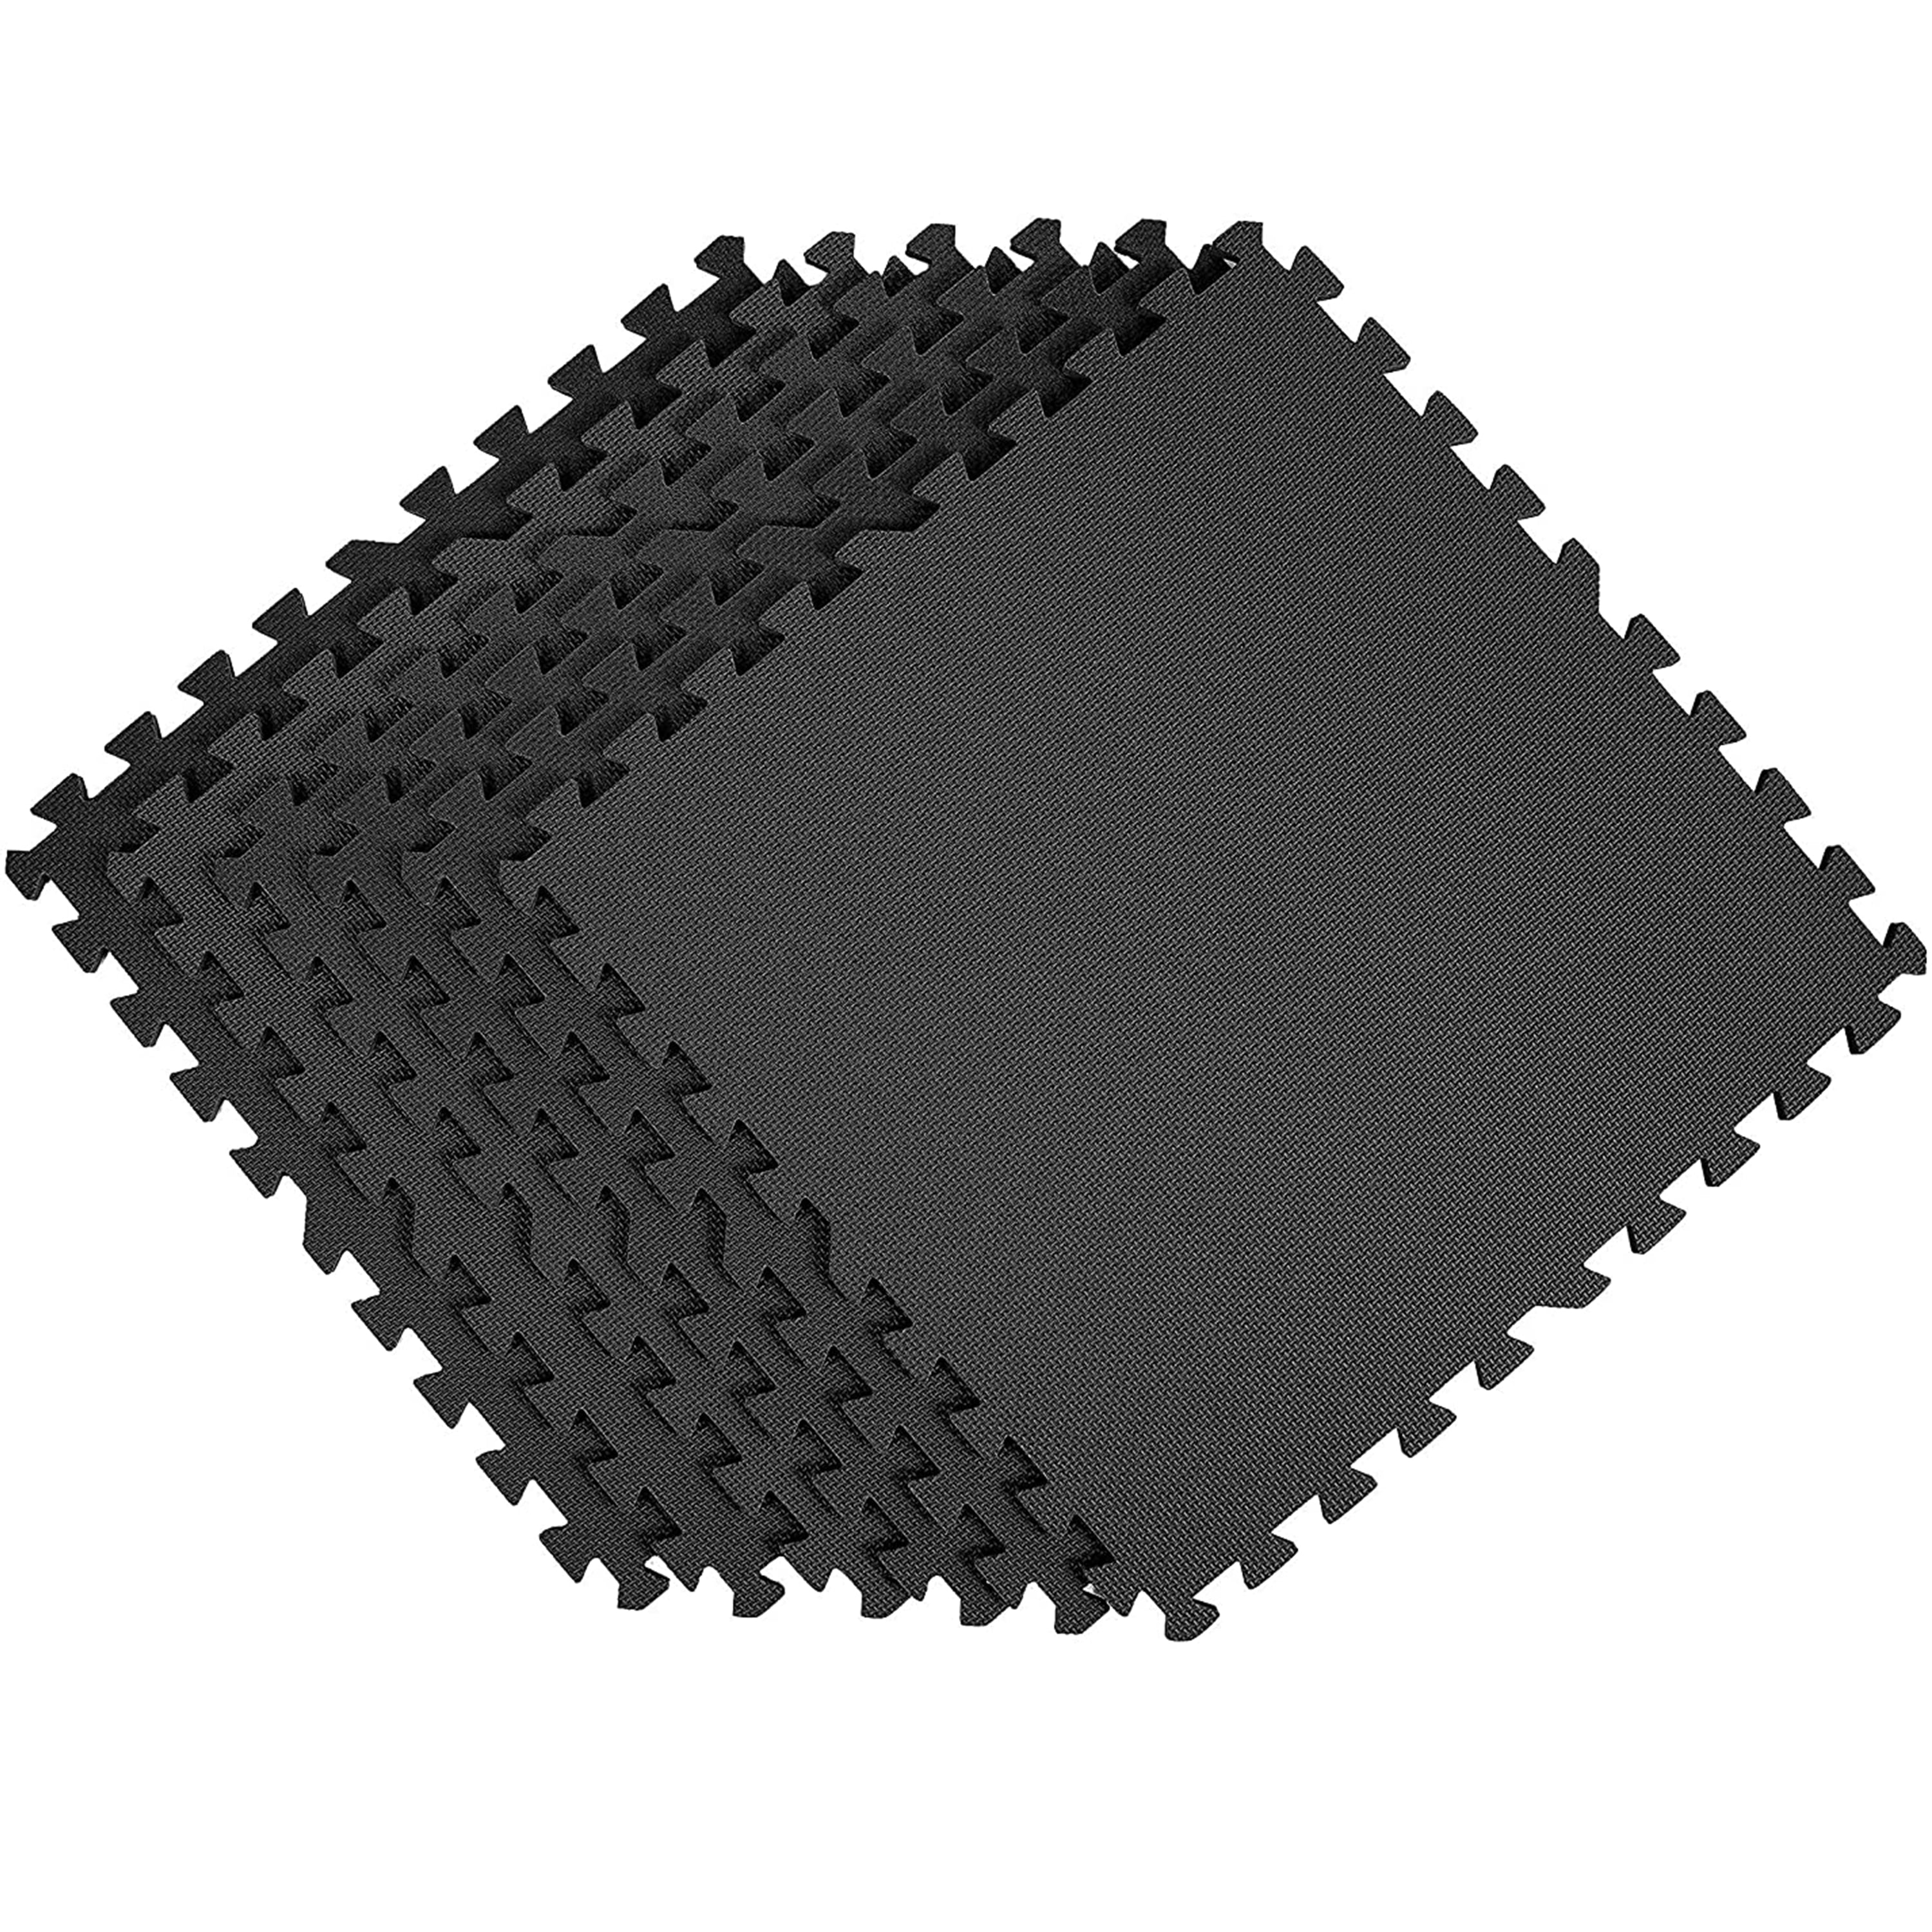 Incstores Exercise Tiles 2ft x 2ft Portable Interlocking Foam Tile Mats 